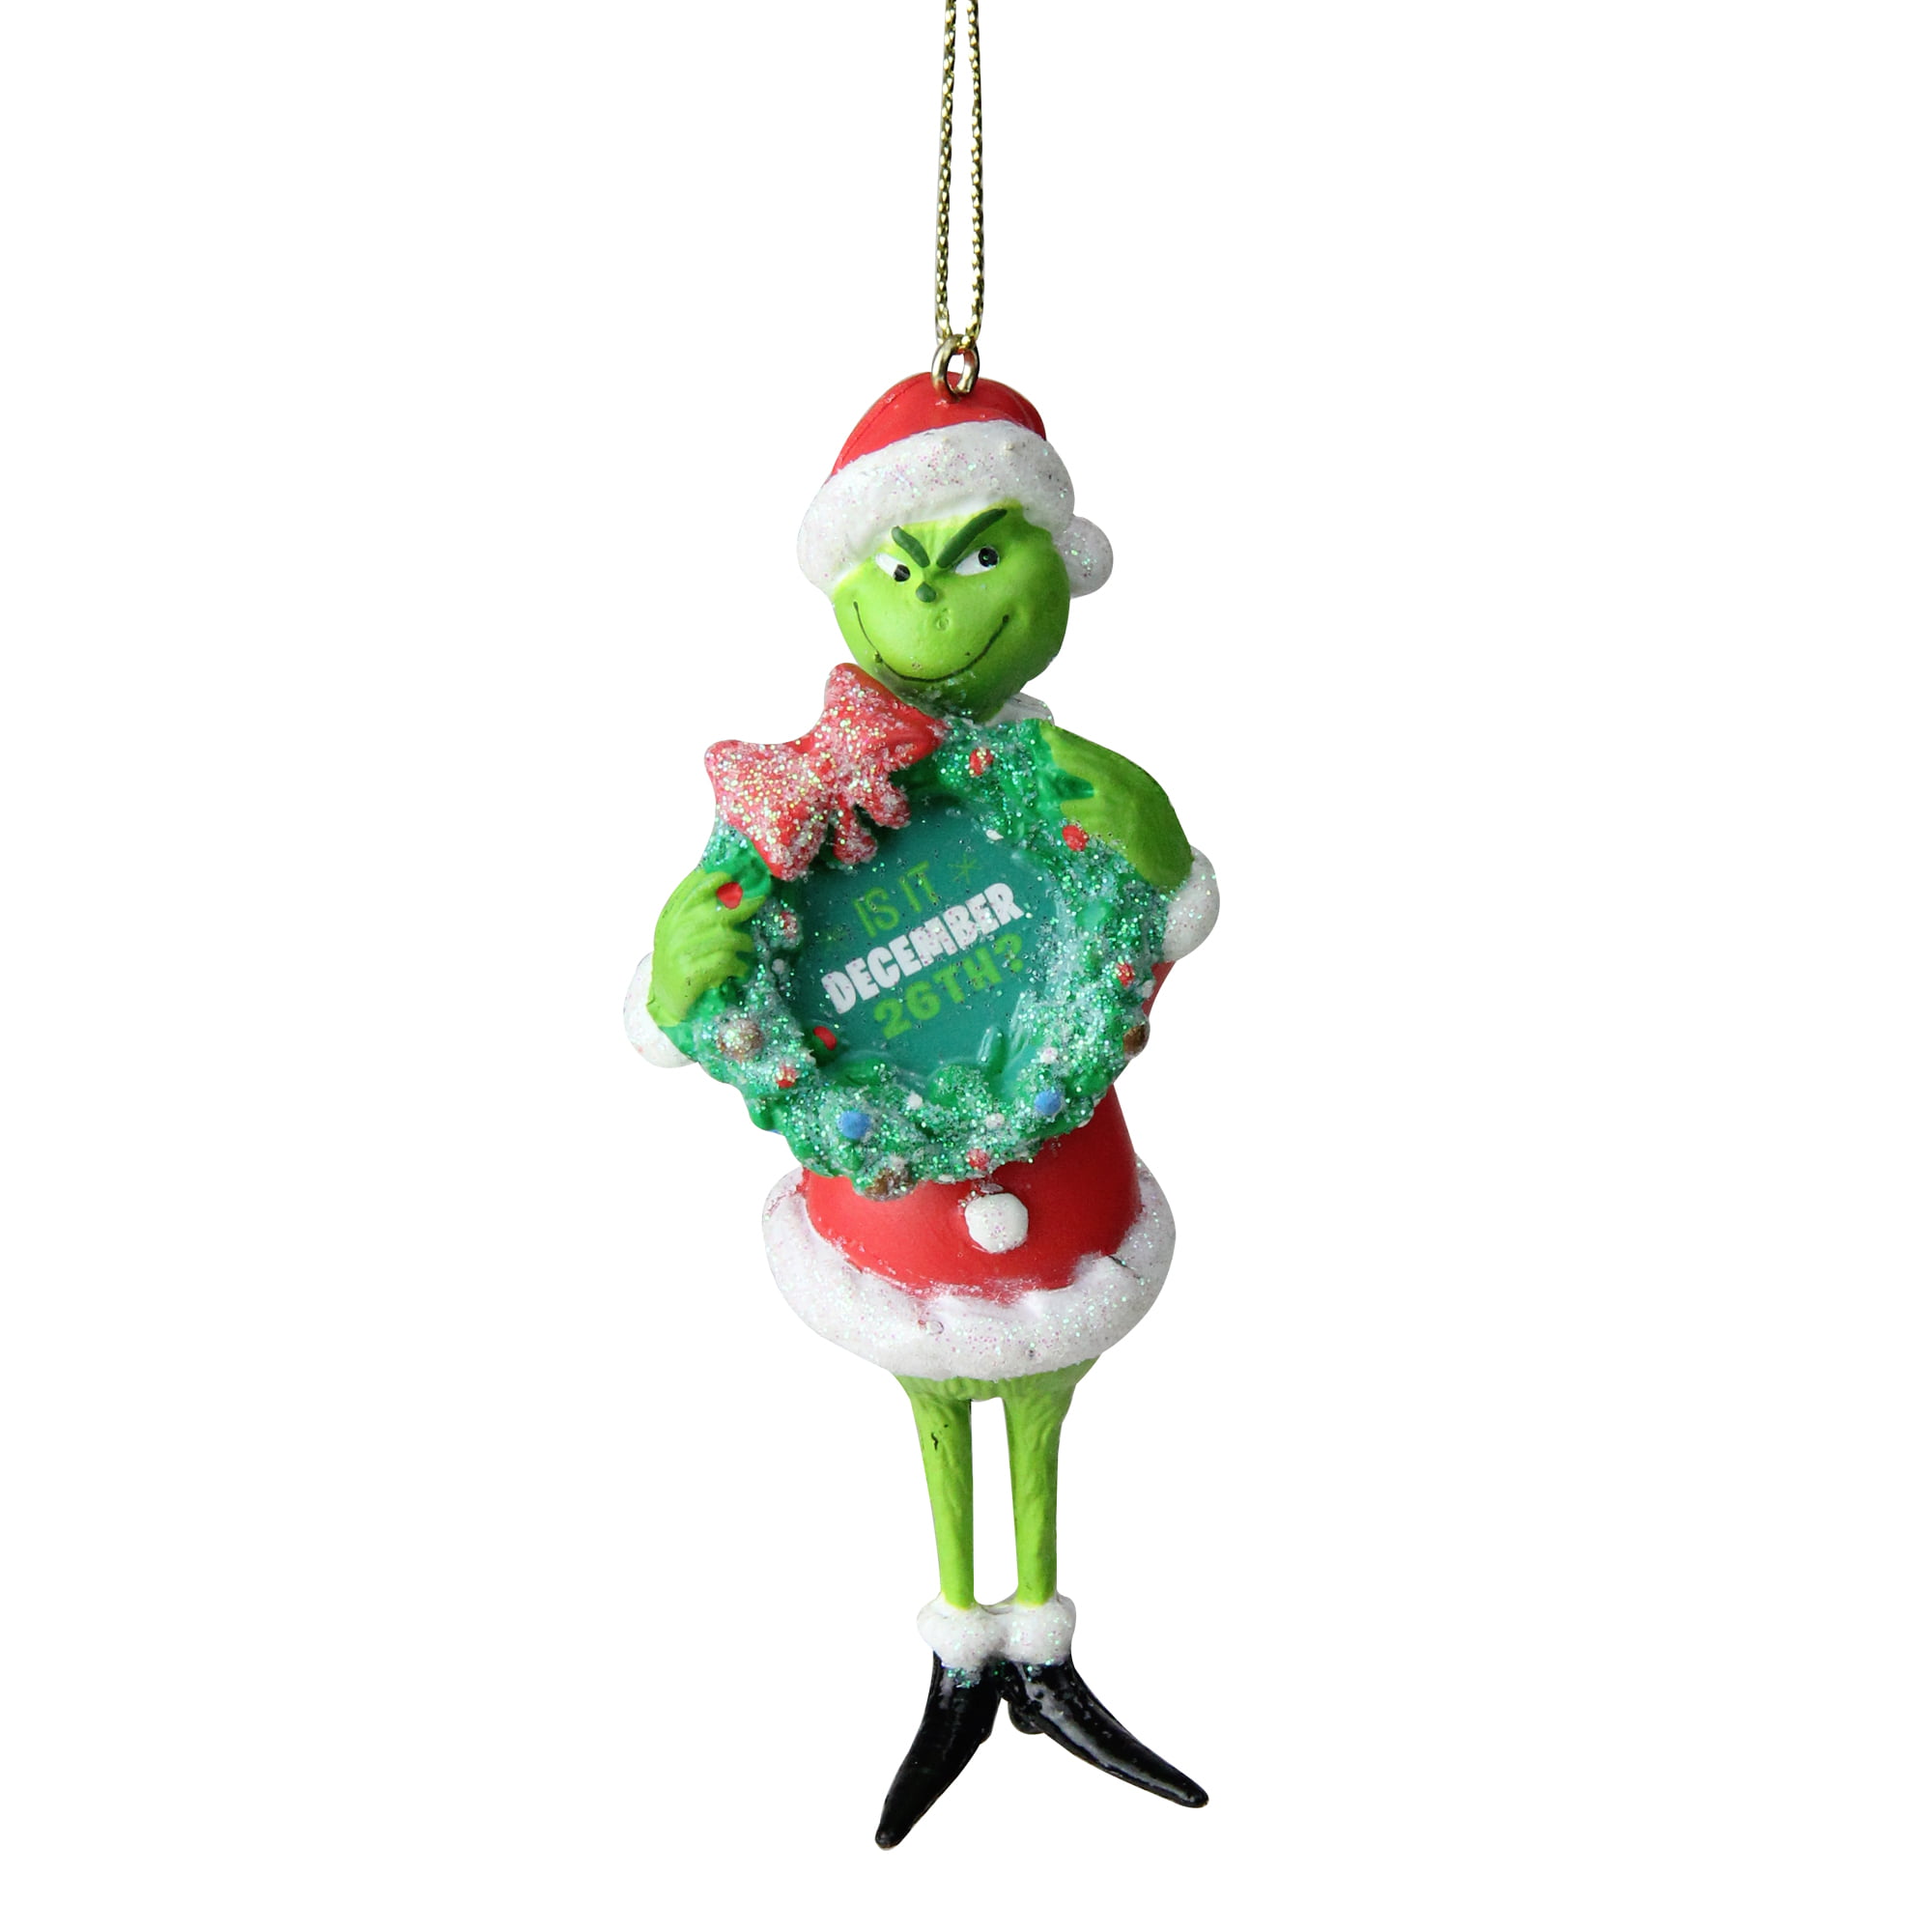 Grinch Santa Grinch Ornament by Kurt Adler 